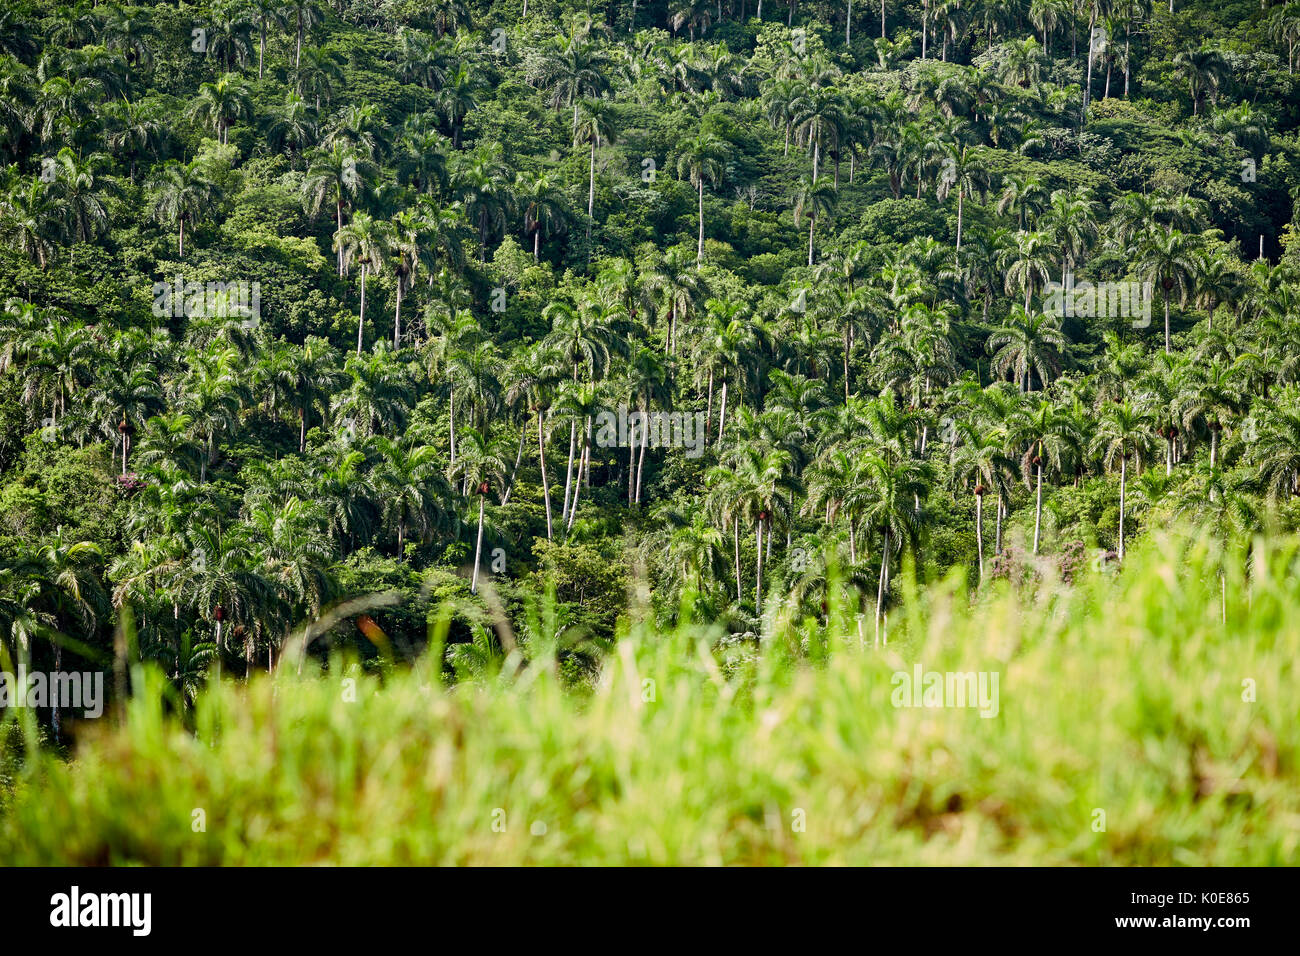 Kuba Roystonea regia, allgemein bekannt als die kubanischen Royal Palm in einem Wald im Tal in der Nähe von Bacunayagua Matanzas, einer karibischen Insel Nation unter communis Stockfoto